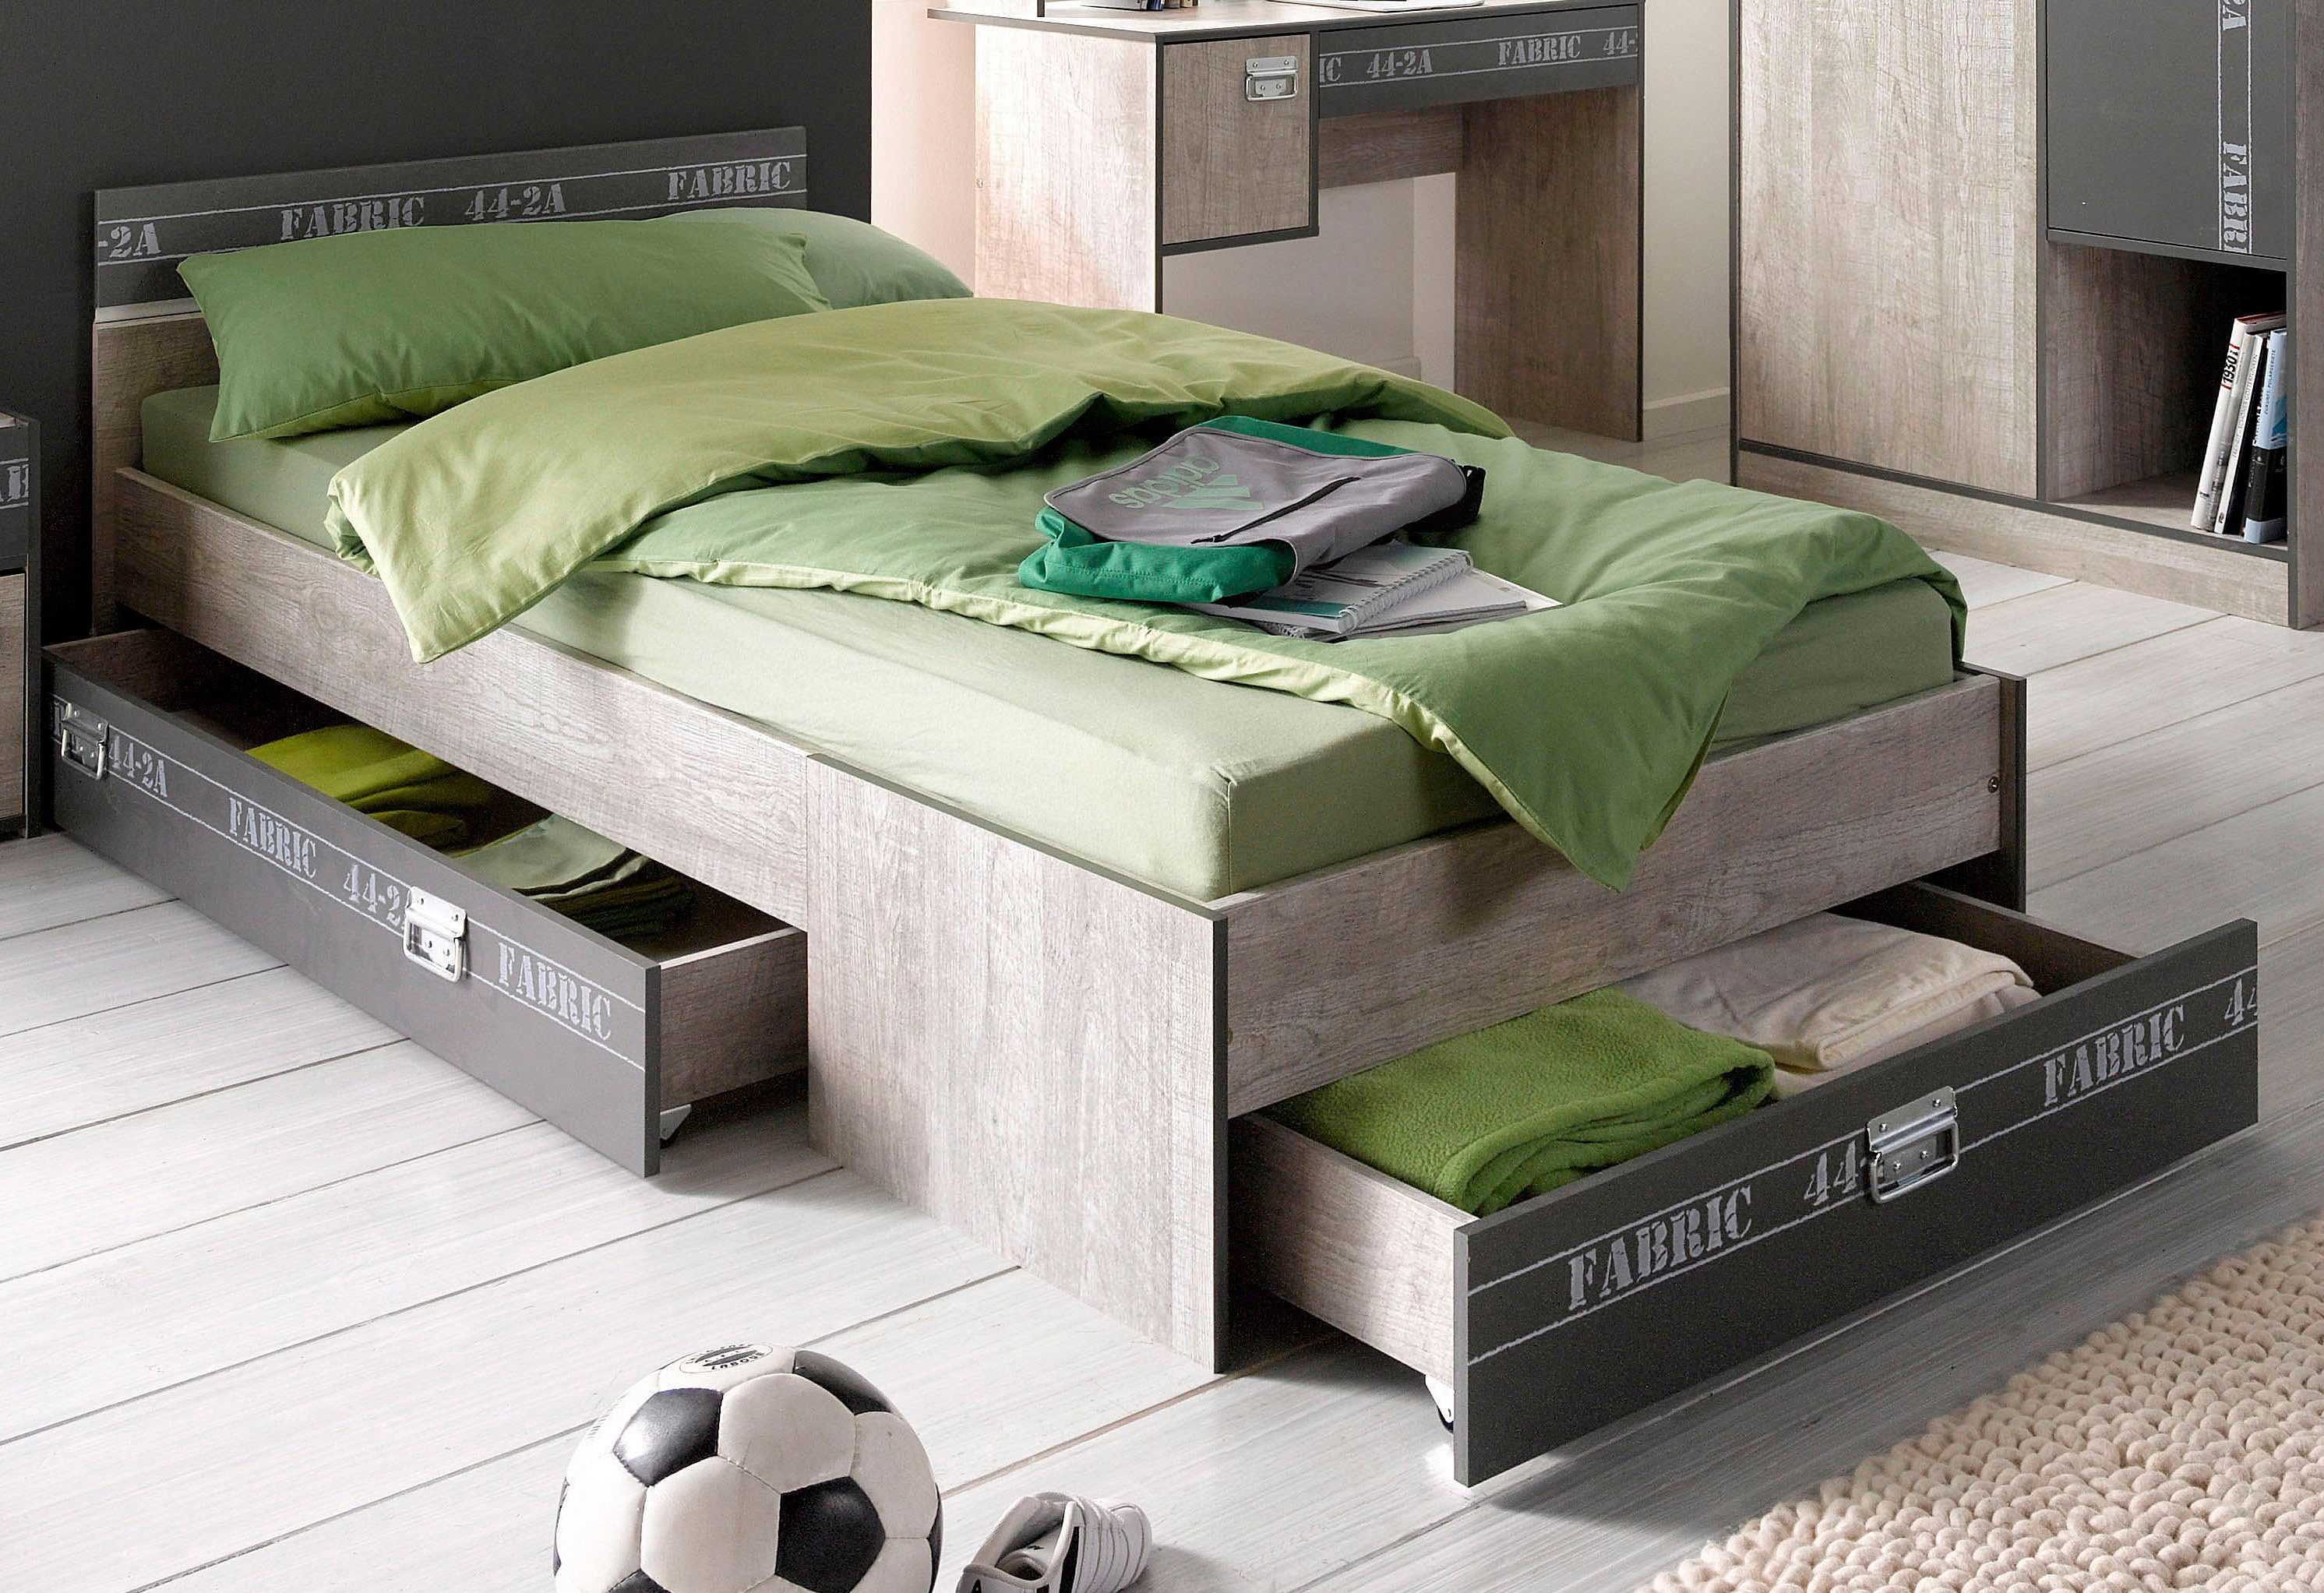 Parisot Jugendbett "Fabric", Einzelbett inkl. 1 Schubkasten am Fußteil, ohne Lattenrost, Matratze